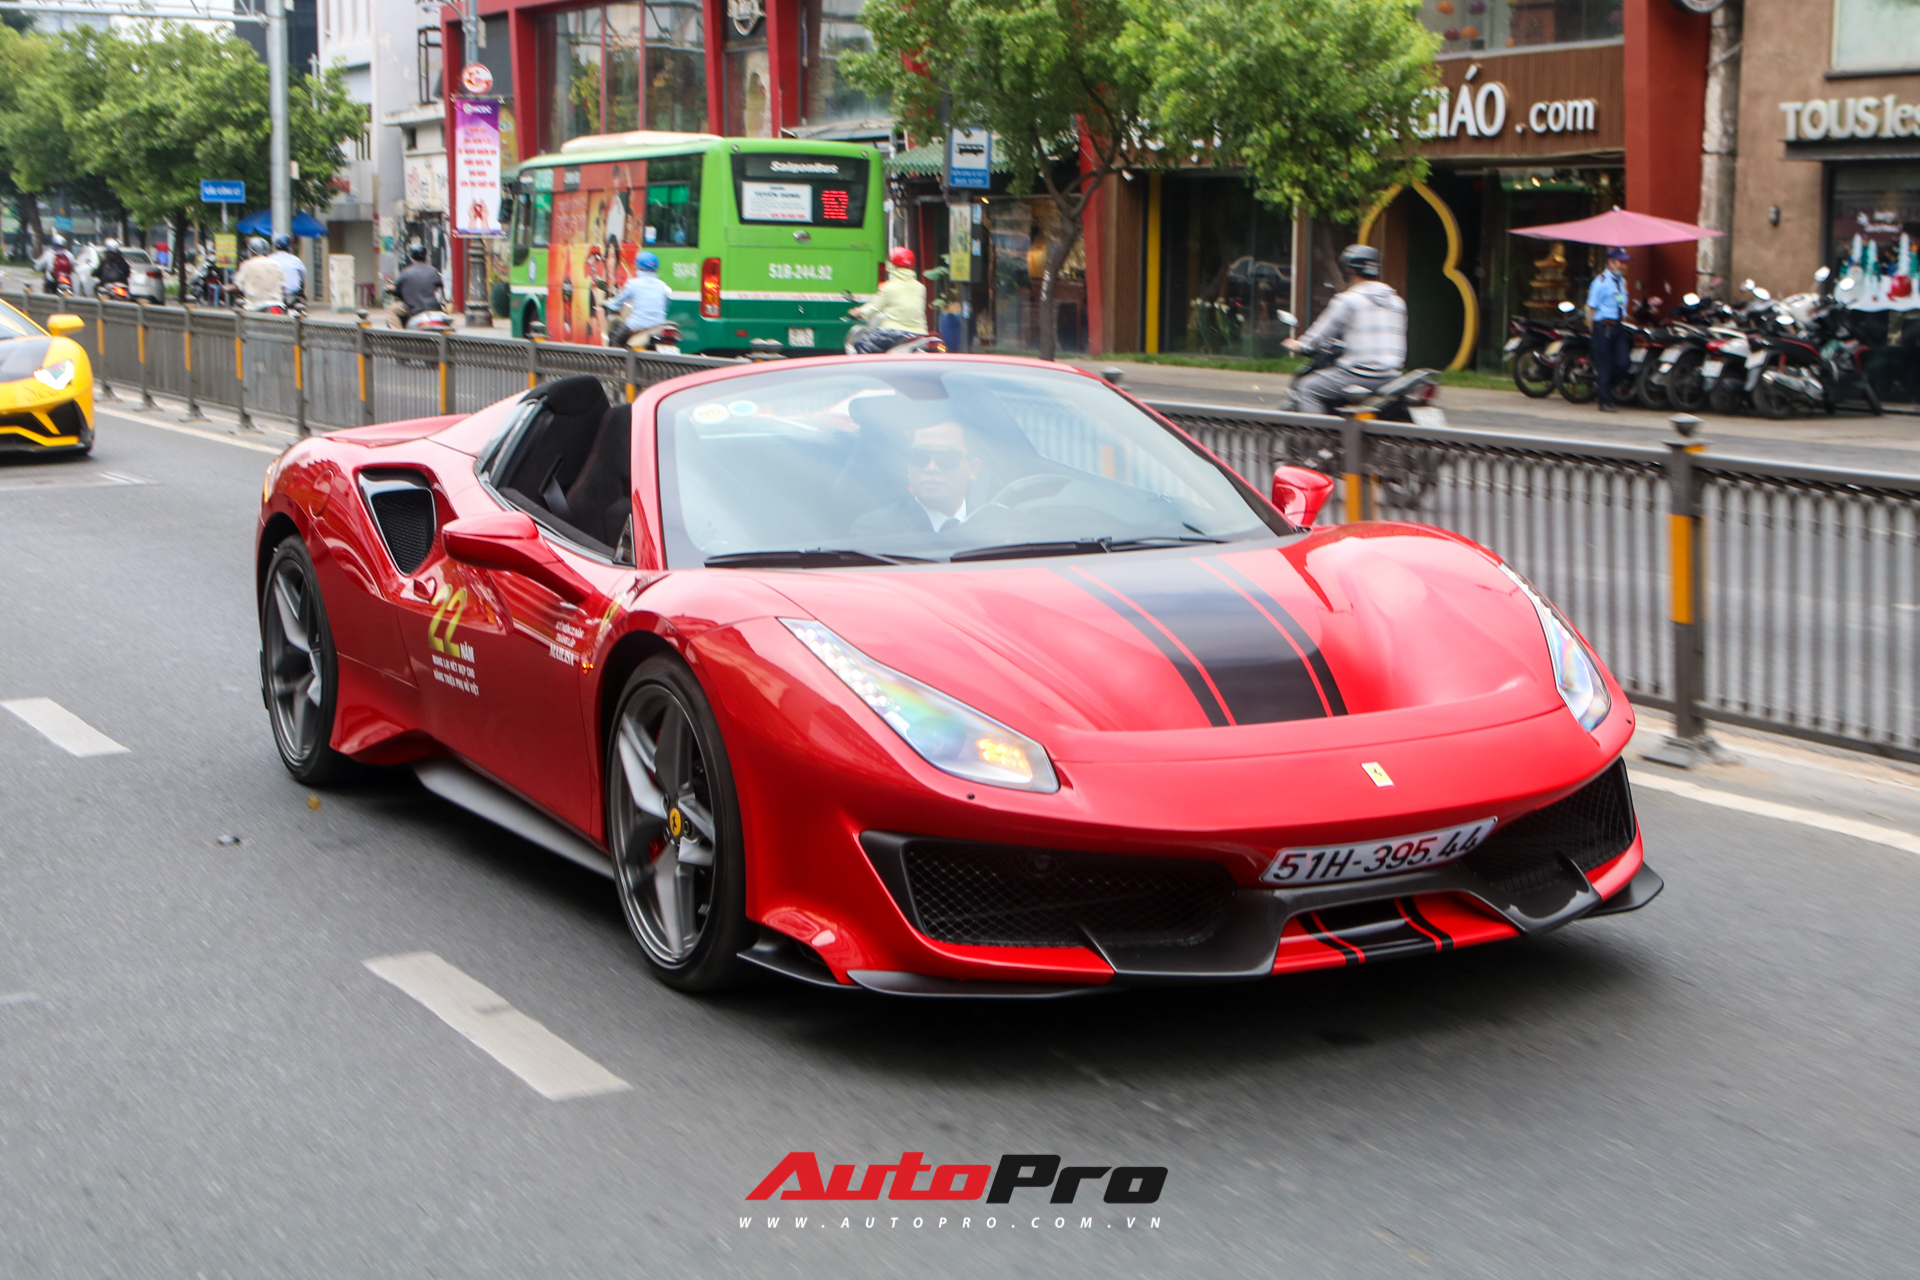 Hoàng Kim Khánh lần đầu cầm lái, khoe khả năng mở mui của Ferrari 488 Pista Spider trên đường phố Việt - Ảnh 5.